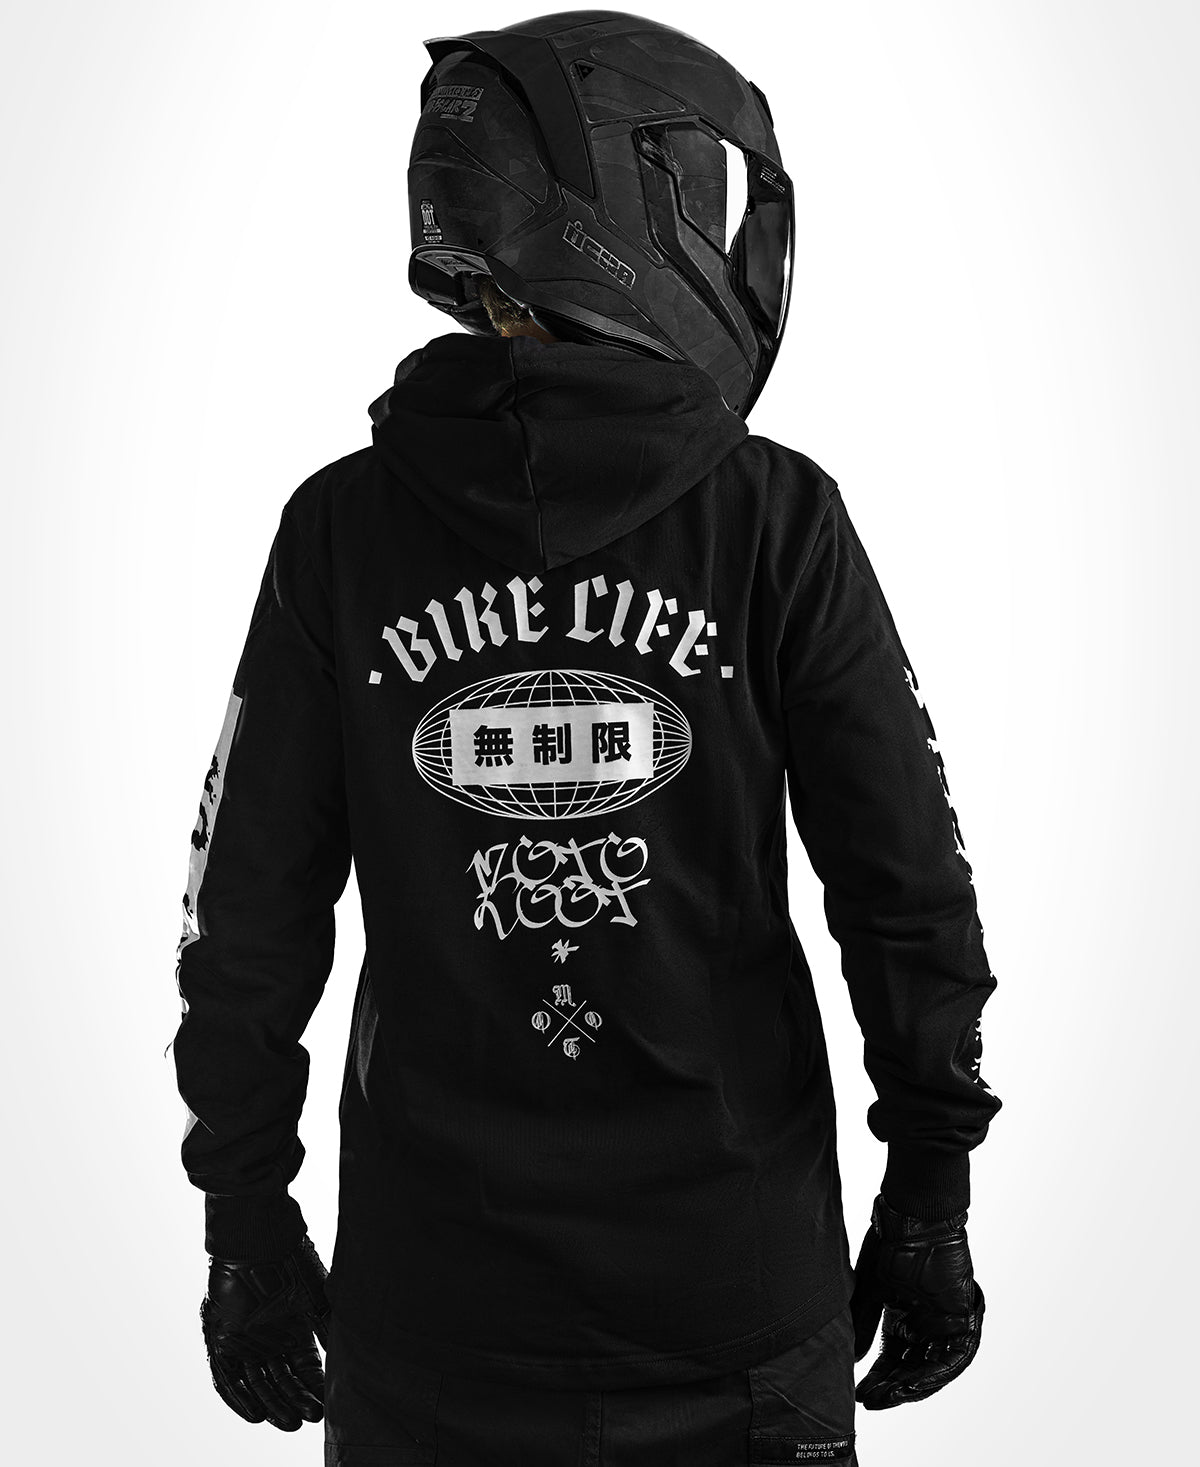 Sweatshirts & Hoodies, Bike Shed Motorcycle Club